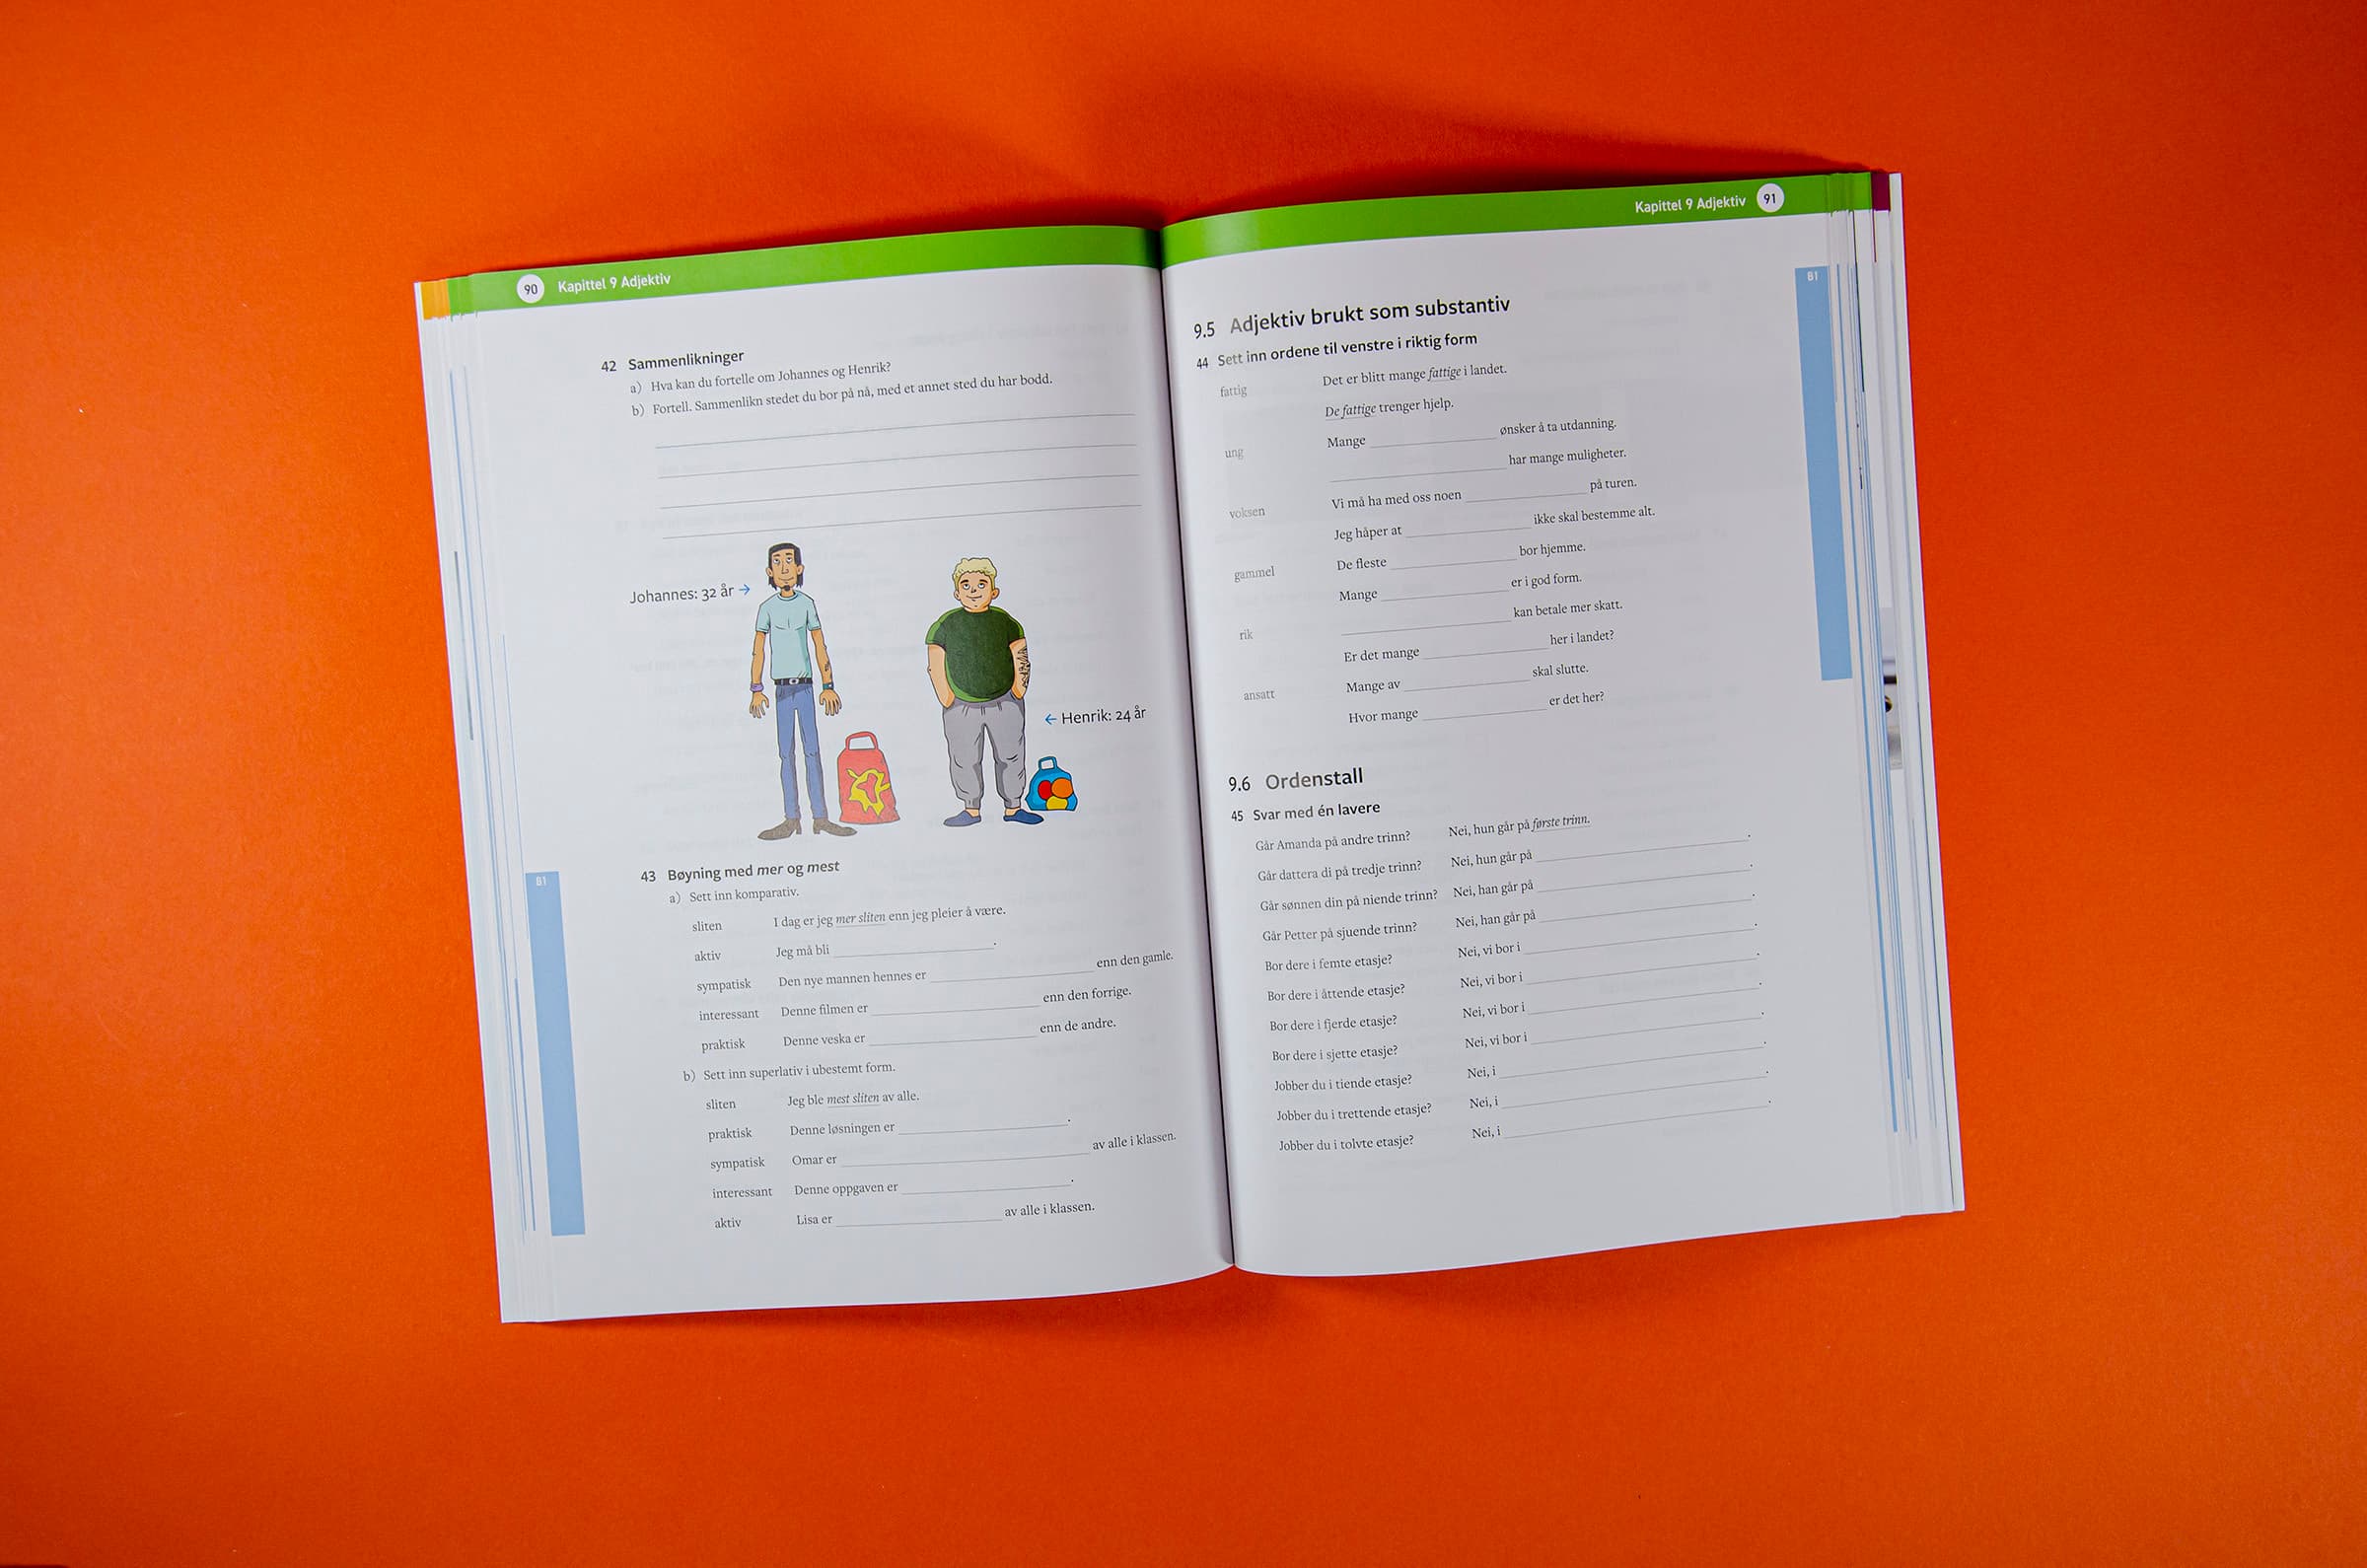 Bildet viser en oppgaveside i boken med en illustrasjon av to personer i midten.